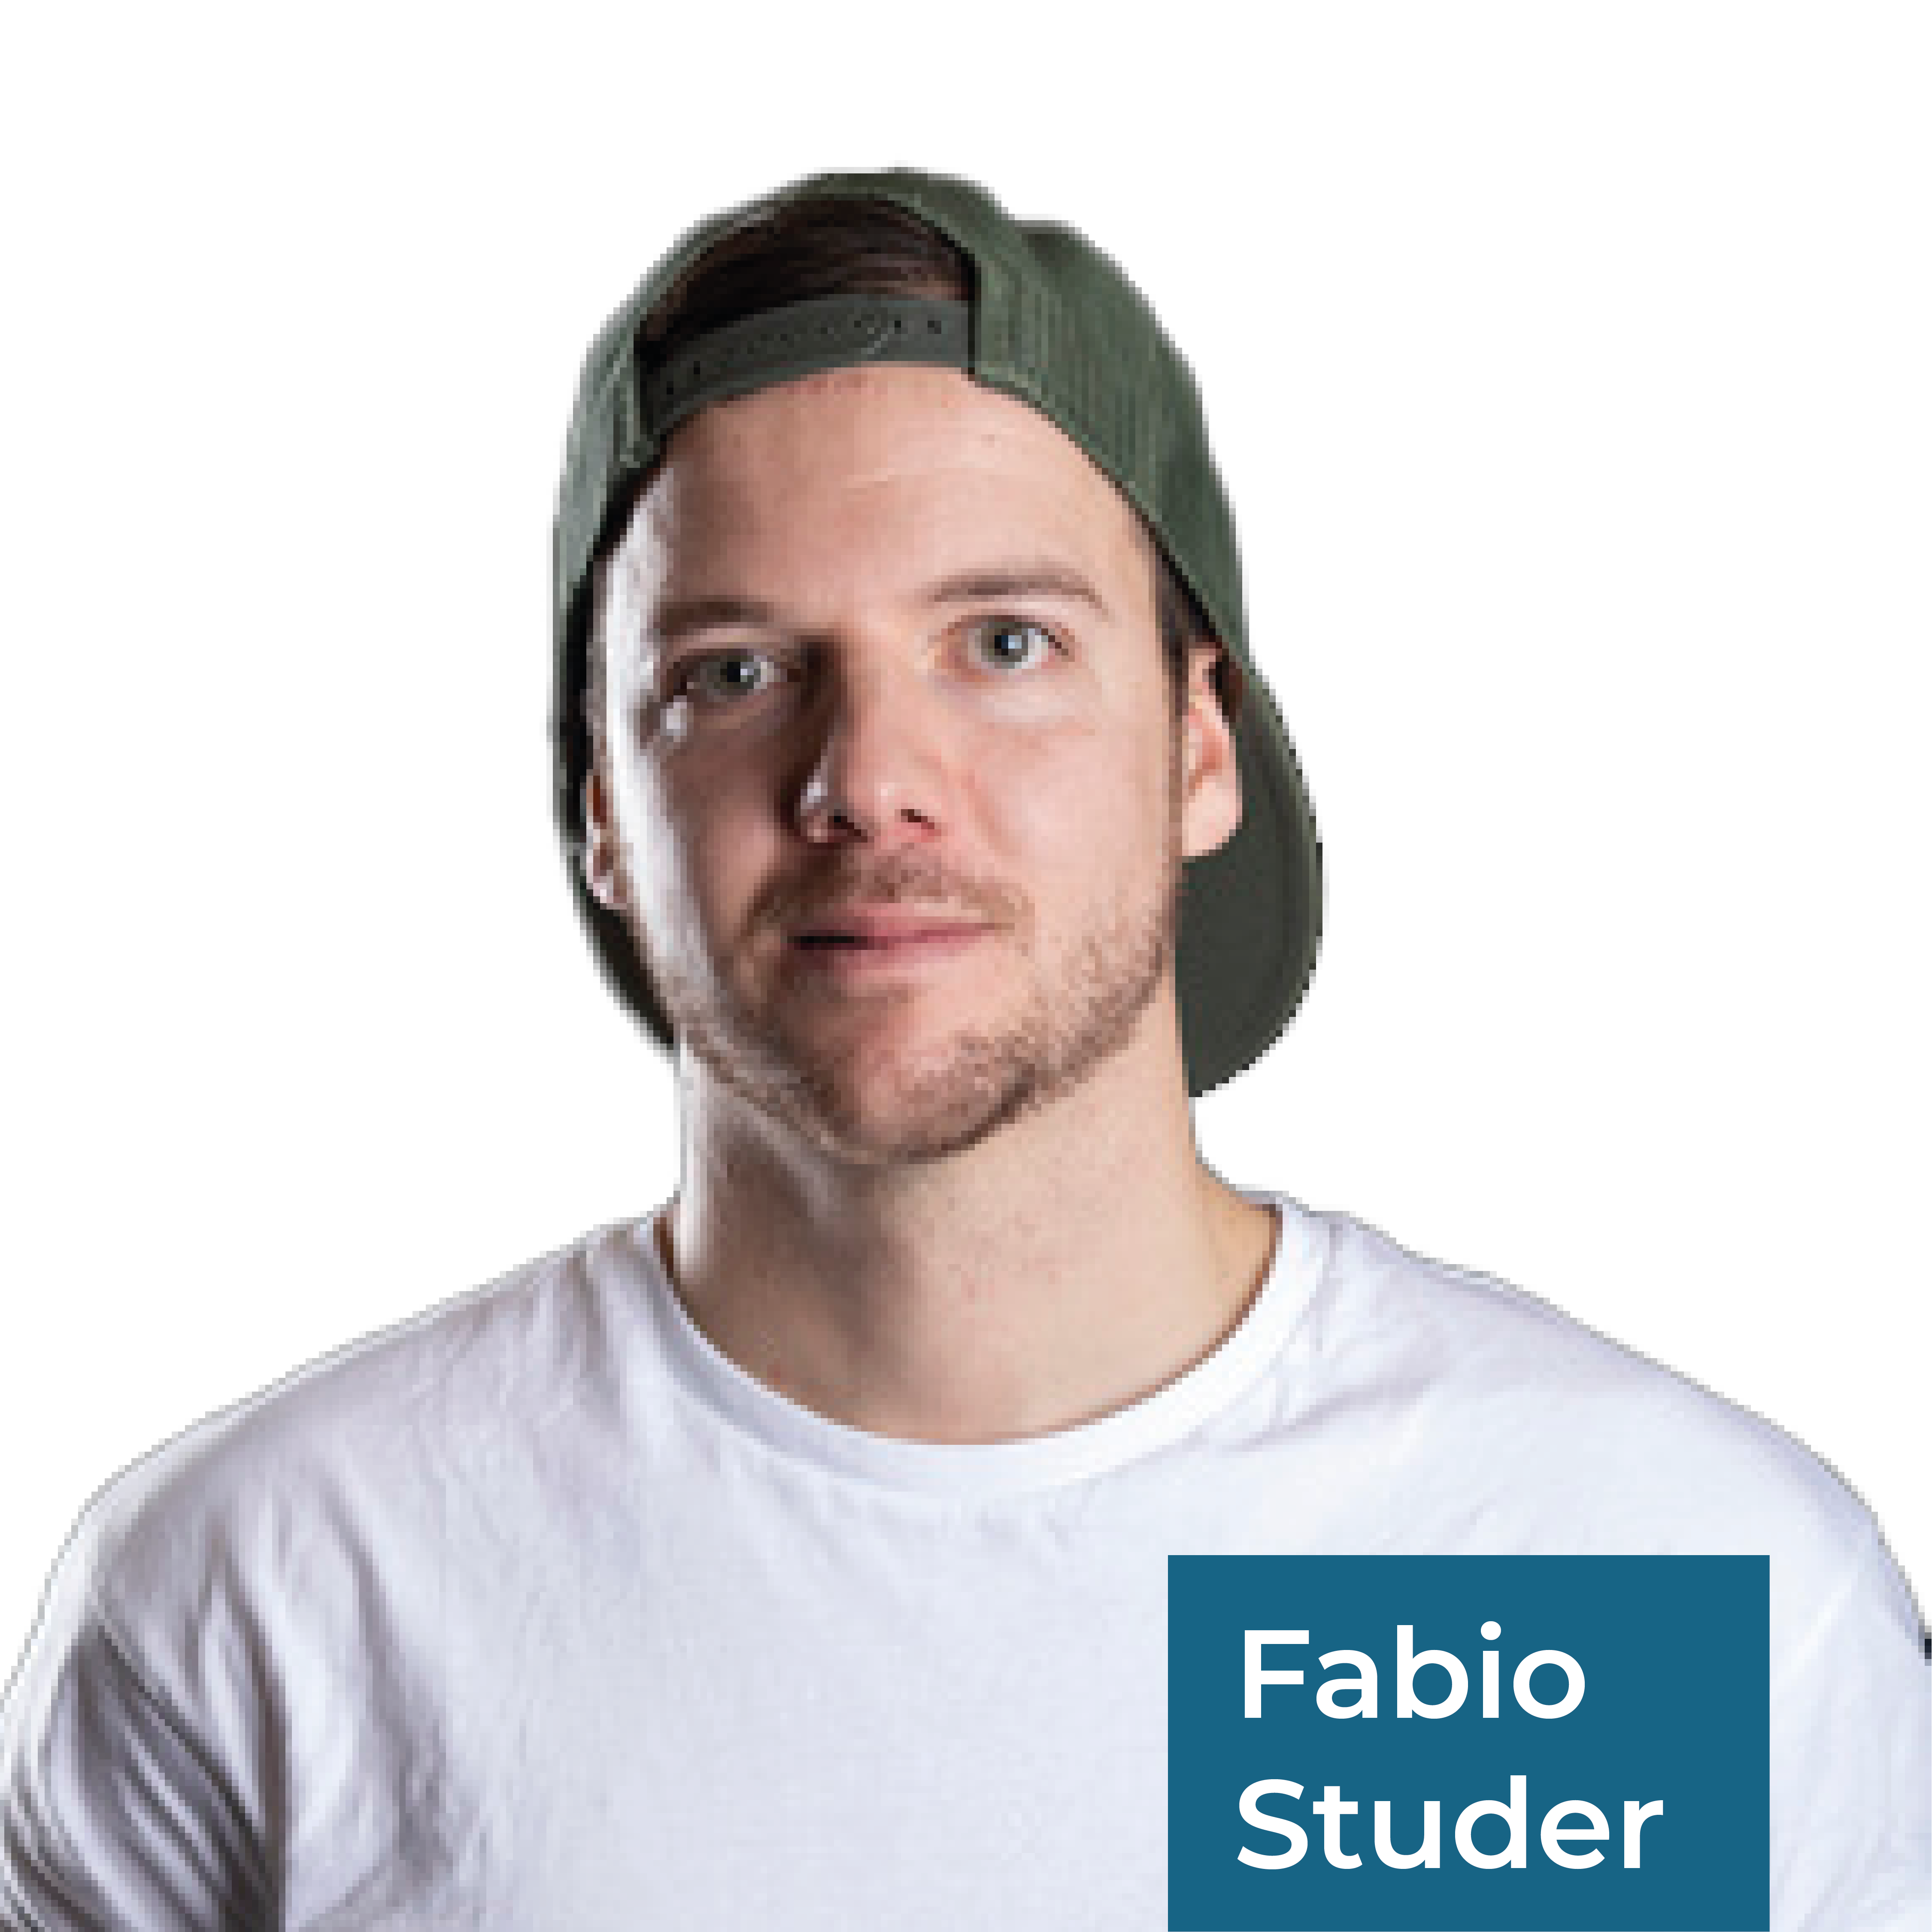 Fabio Studer